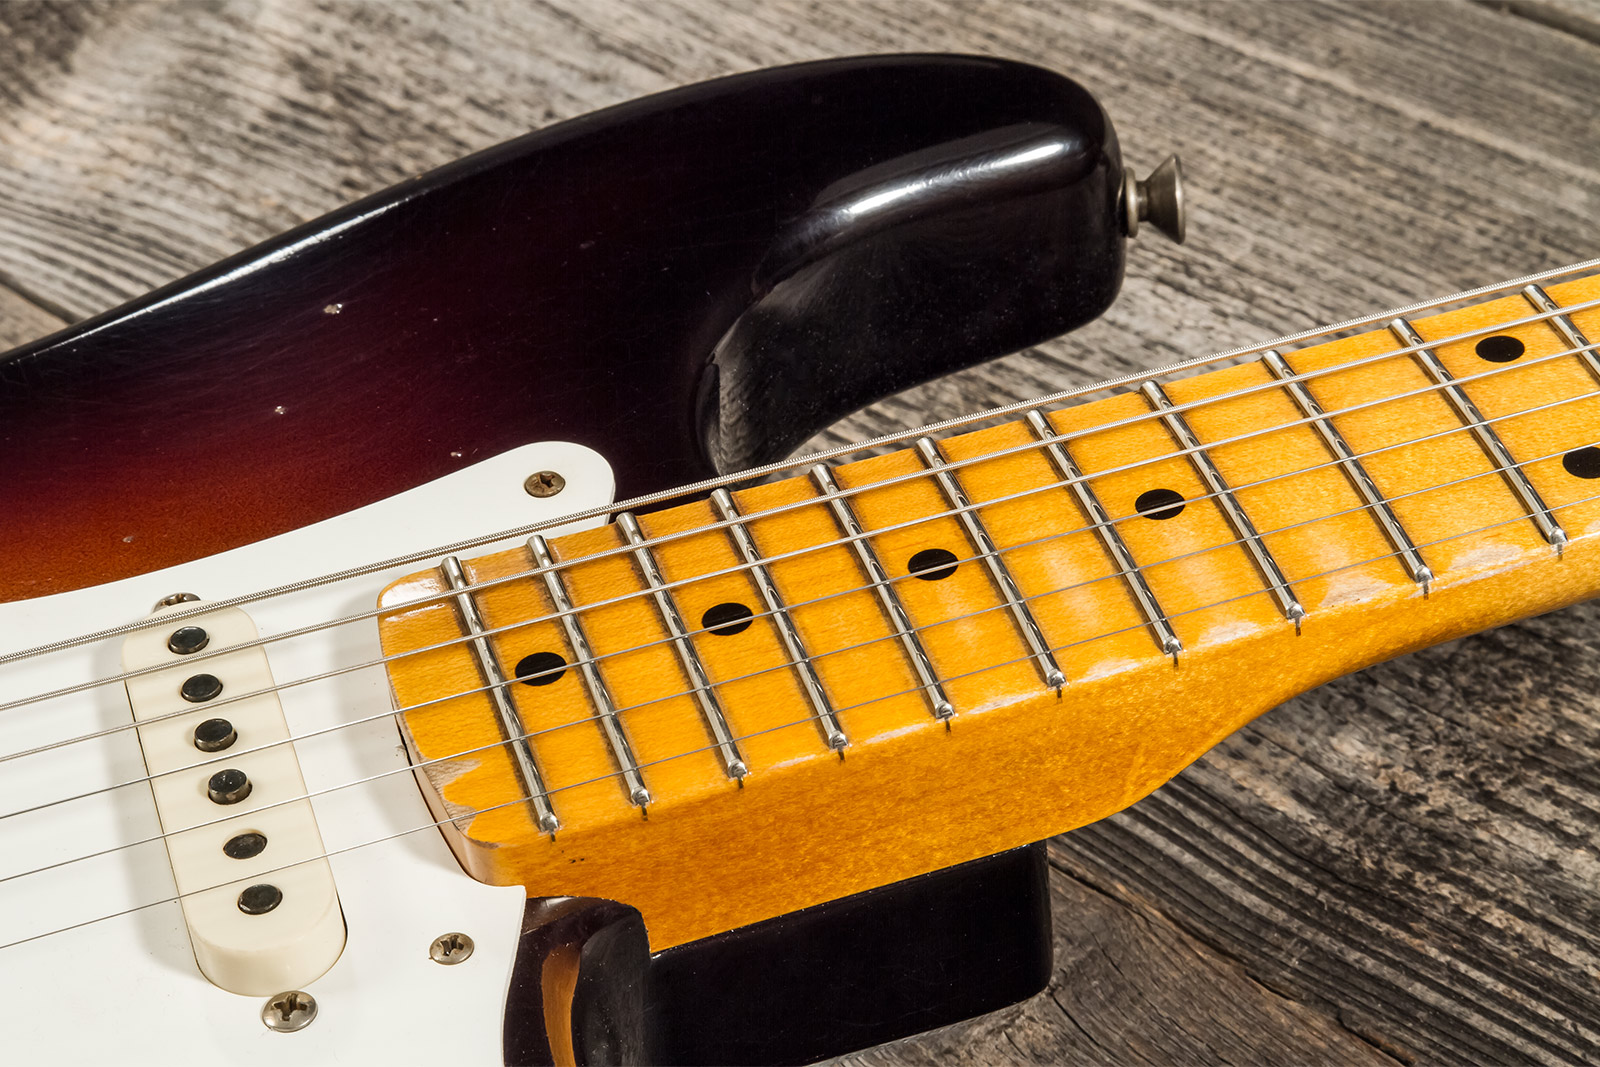 Fender Custom Shop Strat 1957 3s Trem Mn #cz571791 - Relic Wide Fade 2-color Sunburst - Str shape electric guitar - Variation 5